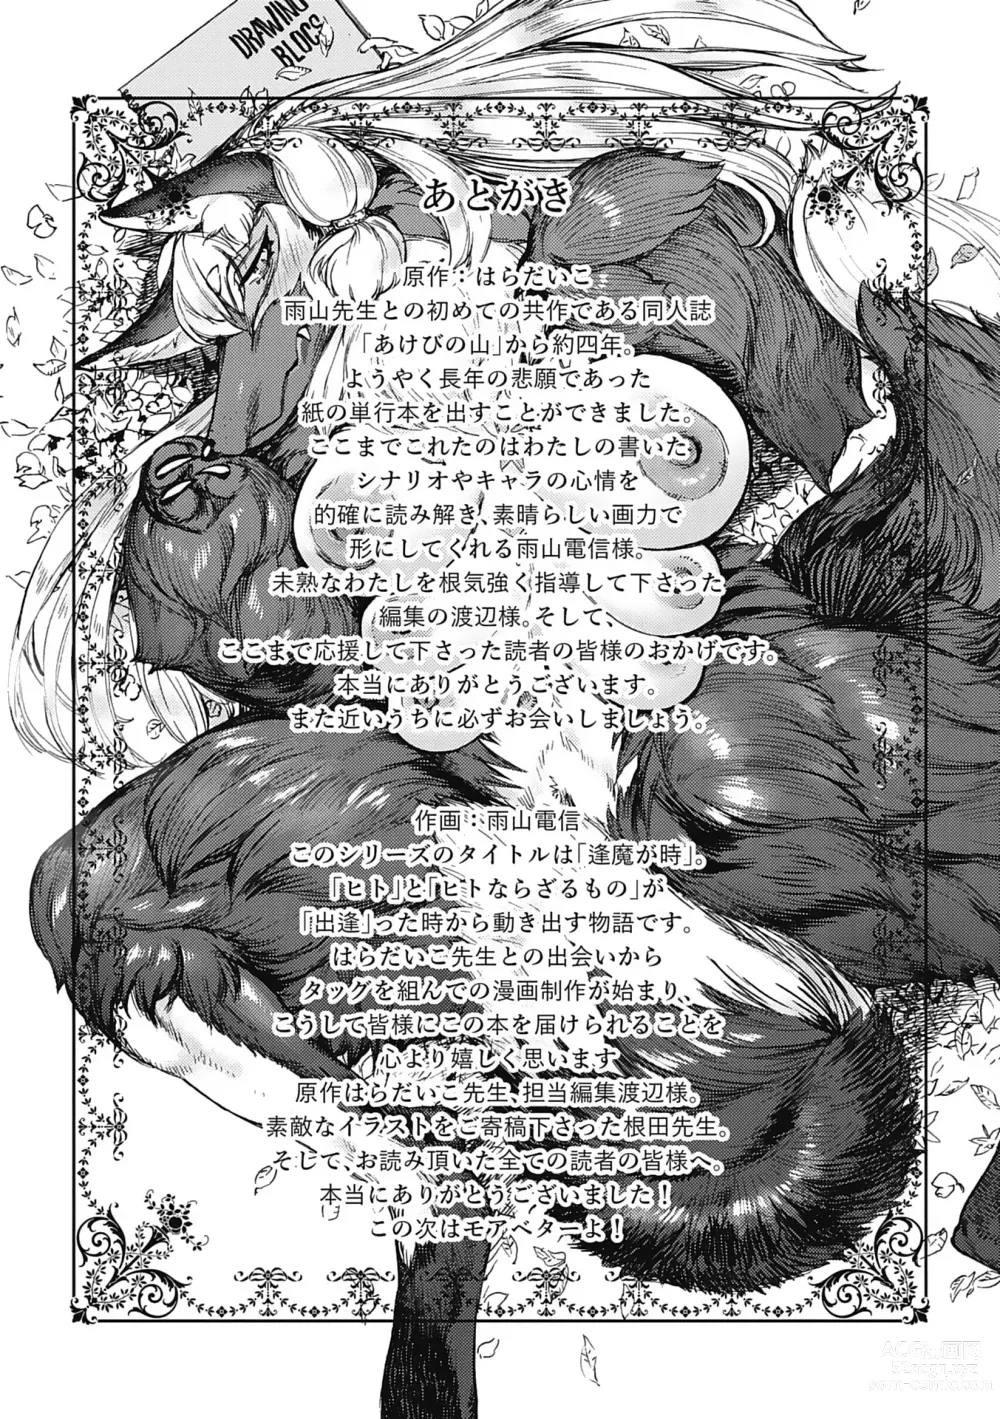 Page 211 of manga Oumagatoki - Ishu Konin Roman Tan -